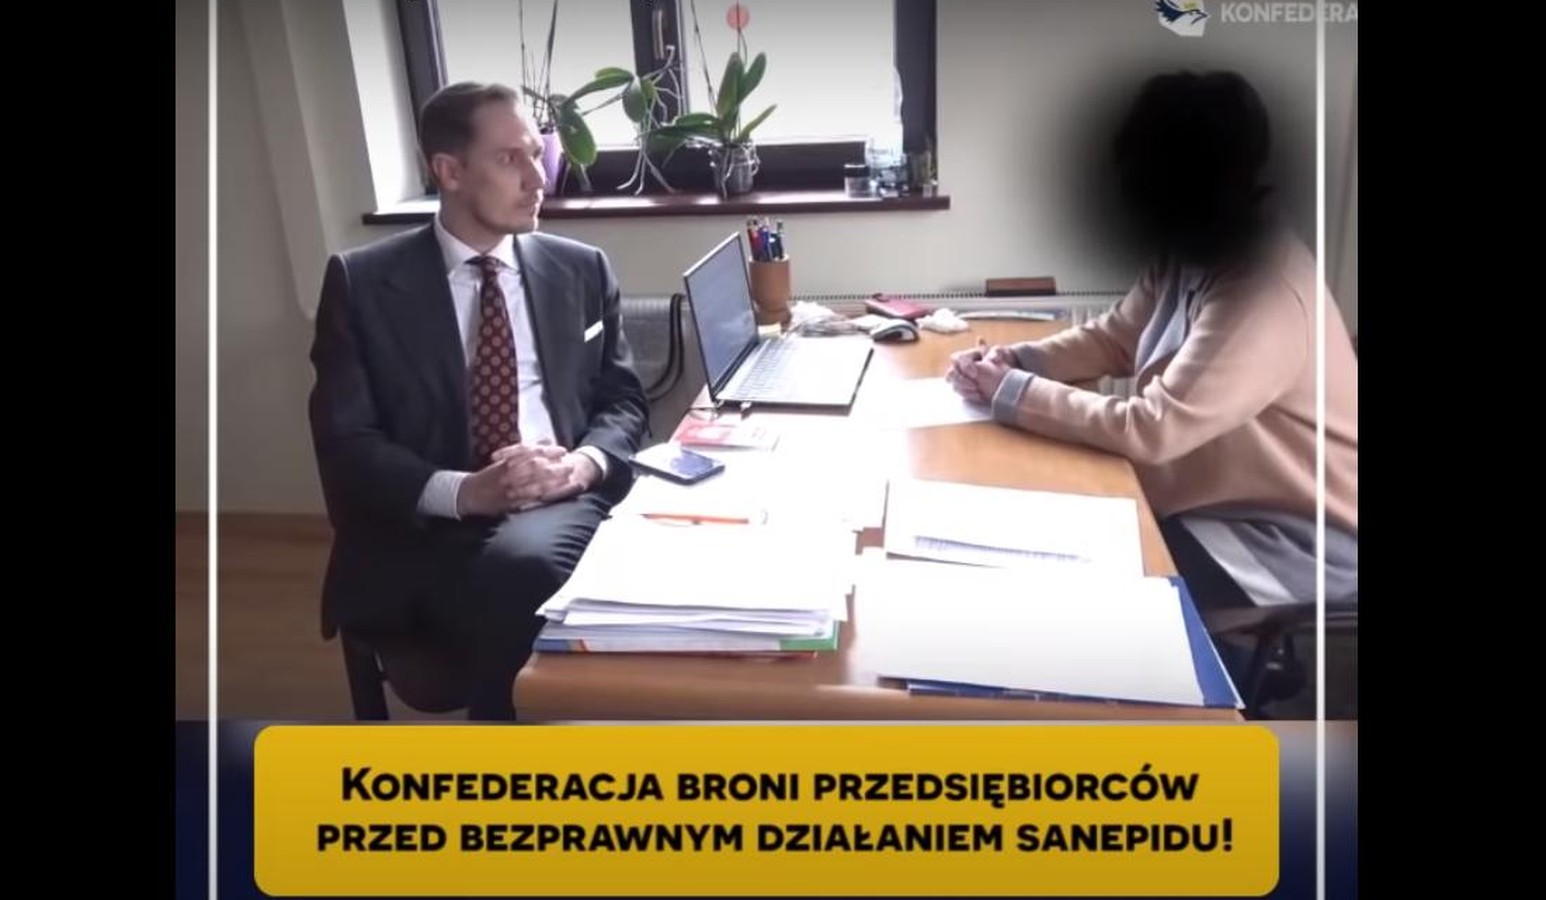 propolski.pl: Sanepid kontrolował przedsiębiorców. Poseł Berkowicz skontrolował sanepid [VIDEO]